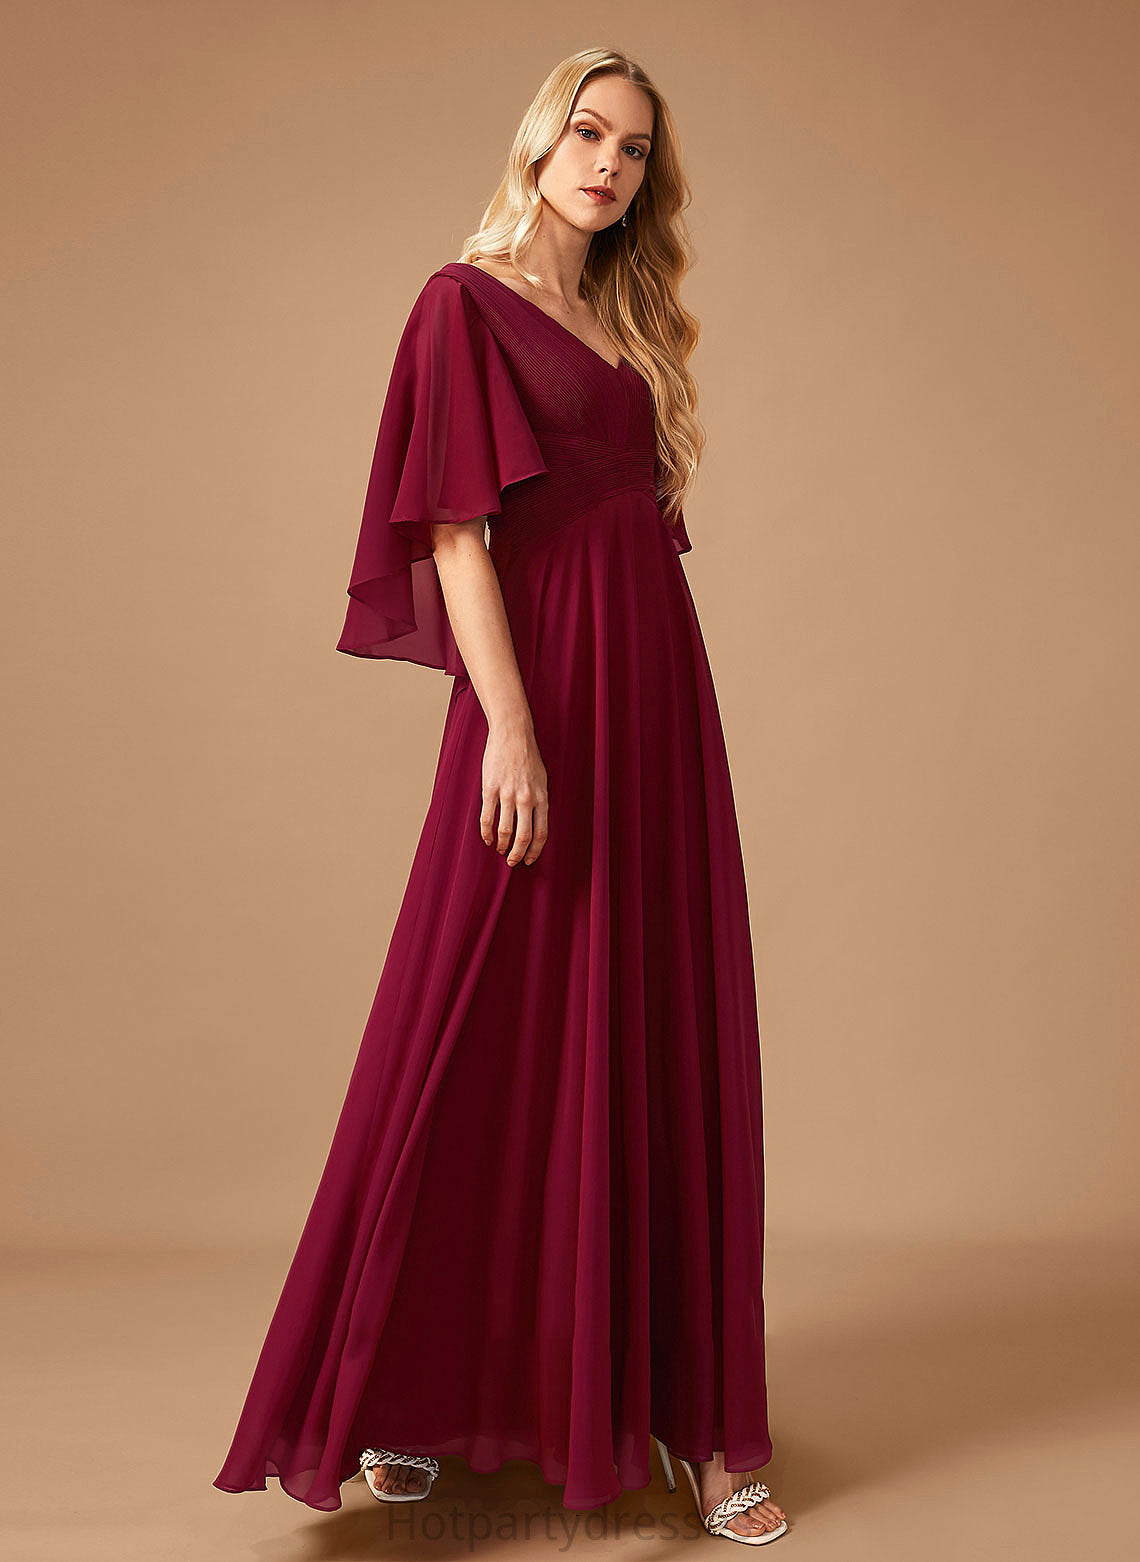 Silhouette A-Line V-neck Neckline Floor-Length Fabric Length Ruffle Embellishment Haven Natural Waist A-Line/Princess Bridesmaid Dresses